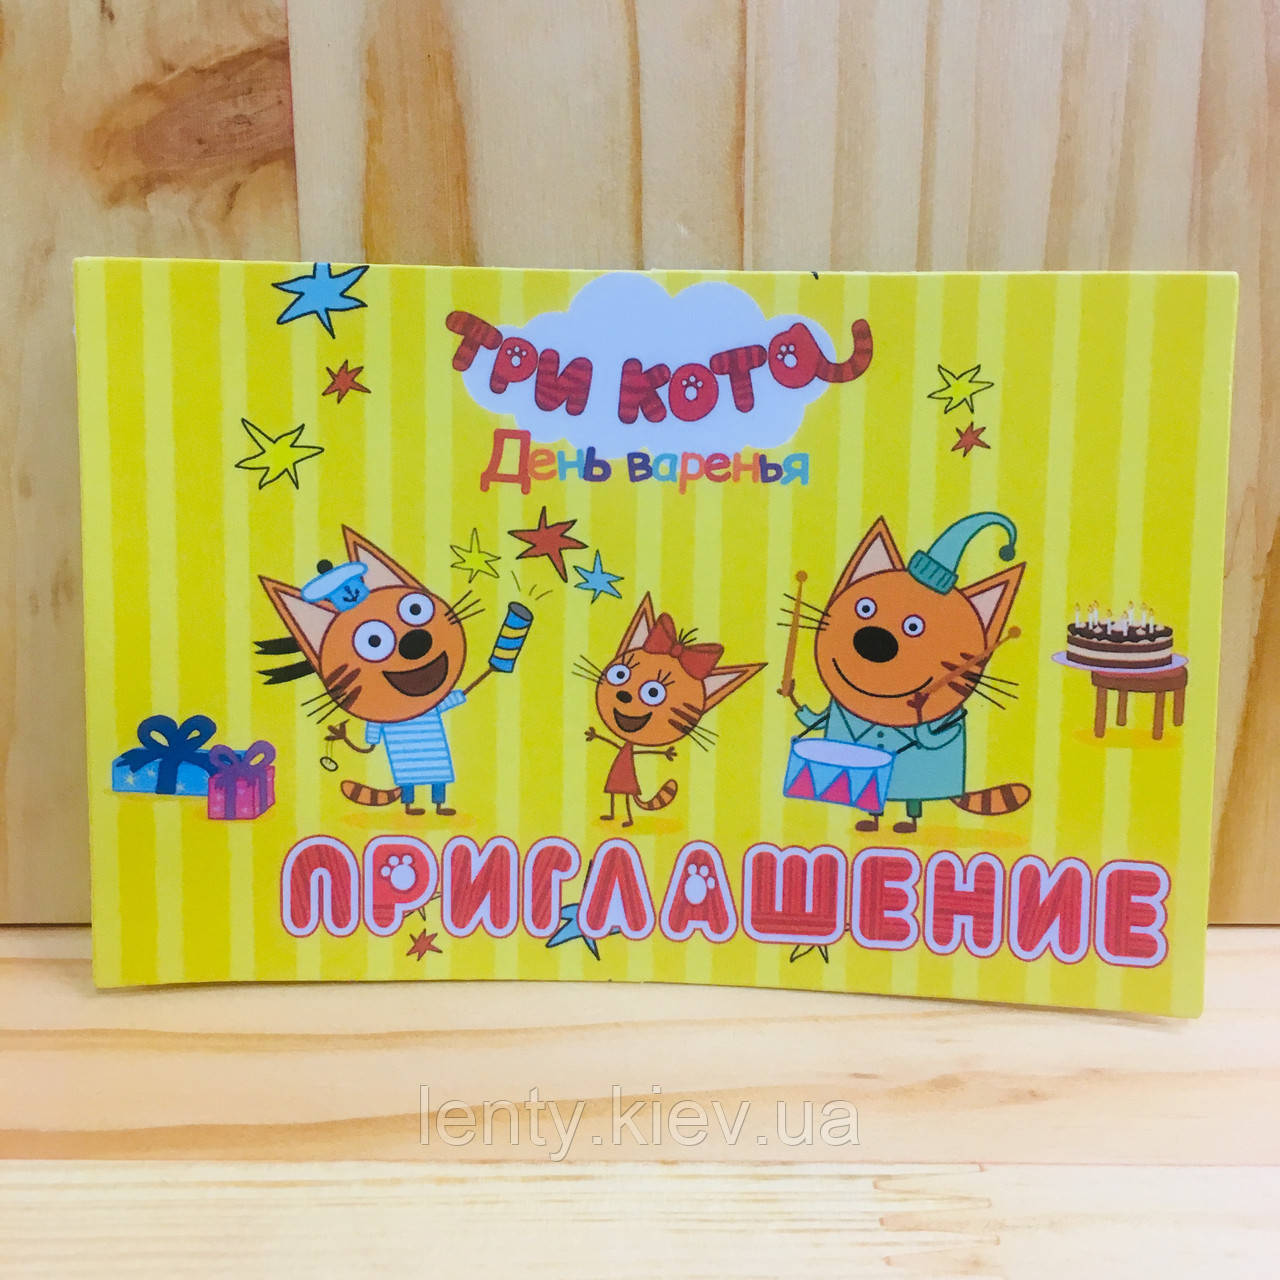 Дитячі запрошення "Три Кота" тематичні (фотопапір) -малотиражні видання- Російською